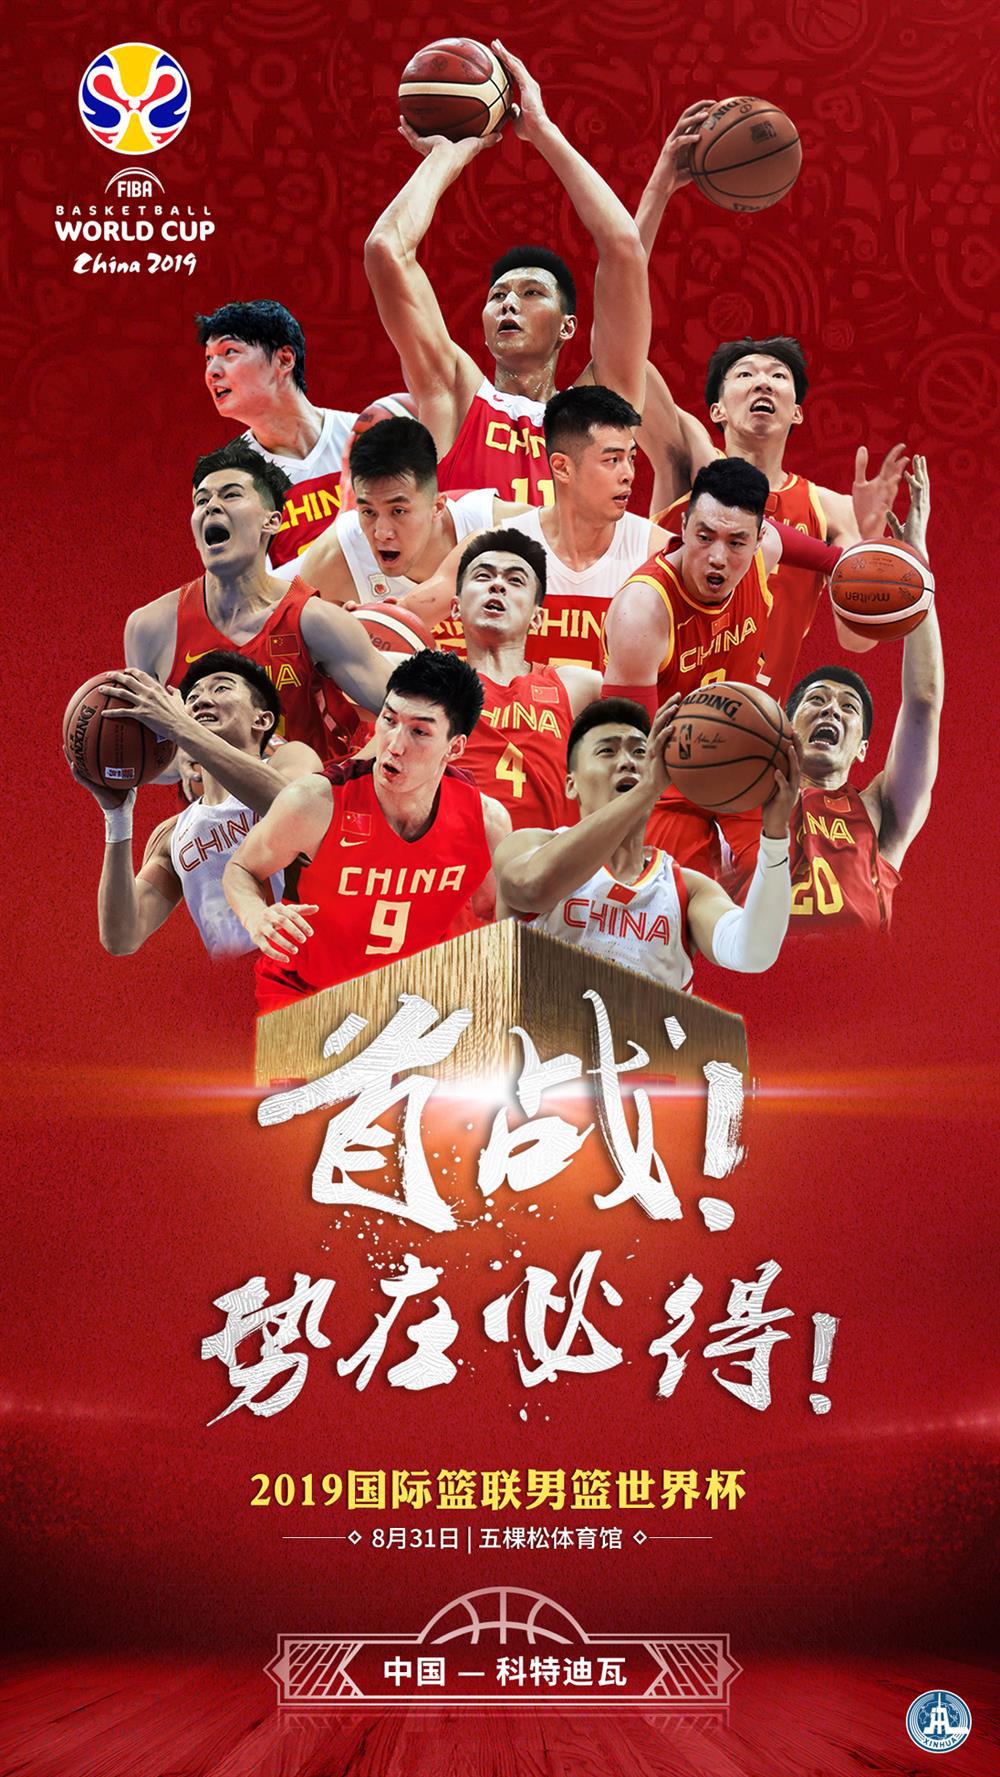 这个夏天, 中国篮球绝对火爆压过中国足球, 接下来借篮球世界杯东风乘势而上!(2)